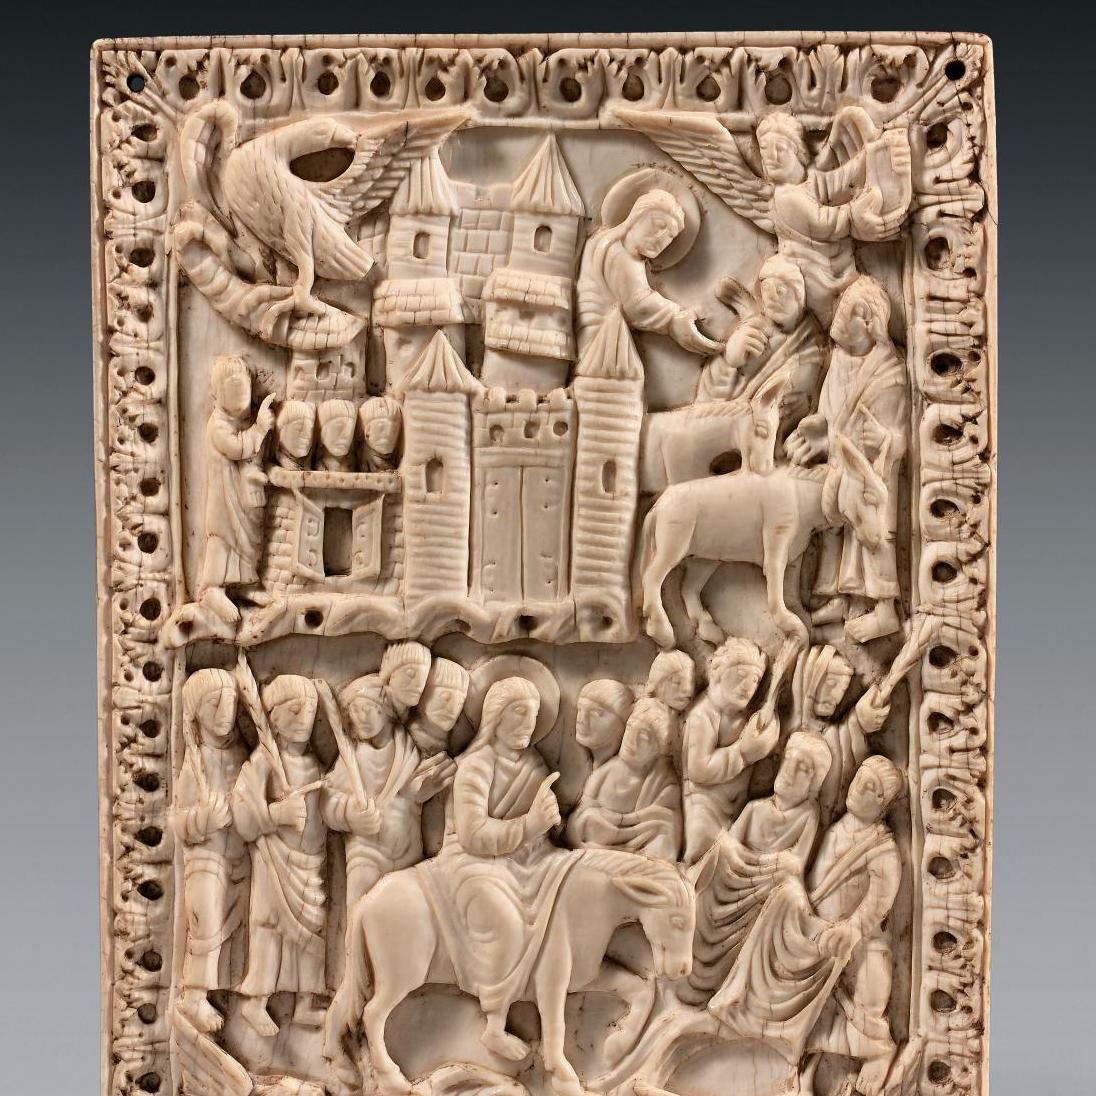 3 602 400 € pour un ivoire sculpté ou l’apothéose de l’art carolingien - Après-vente